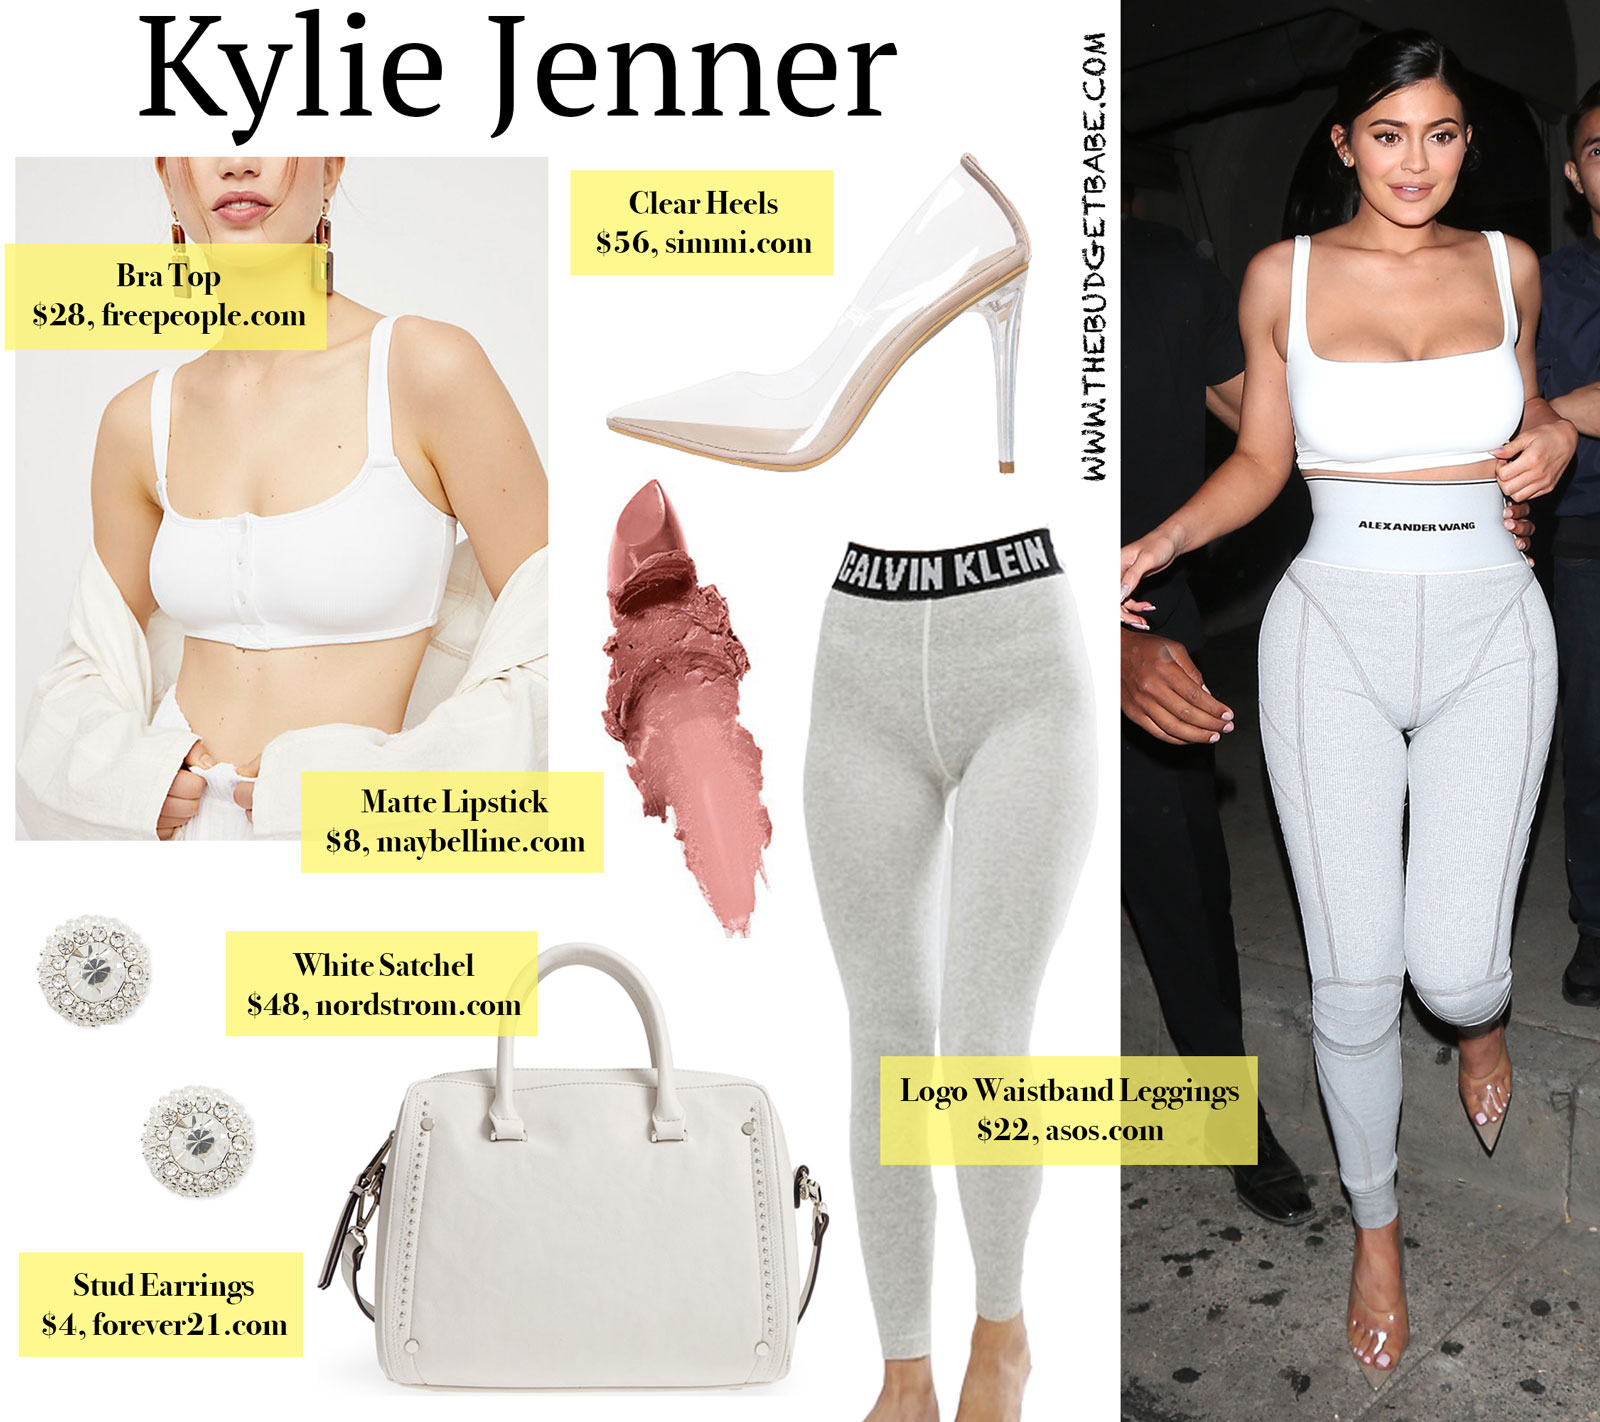 Kylie Jenner Logo Leggings and White Bra Top Look for Less